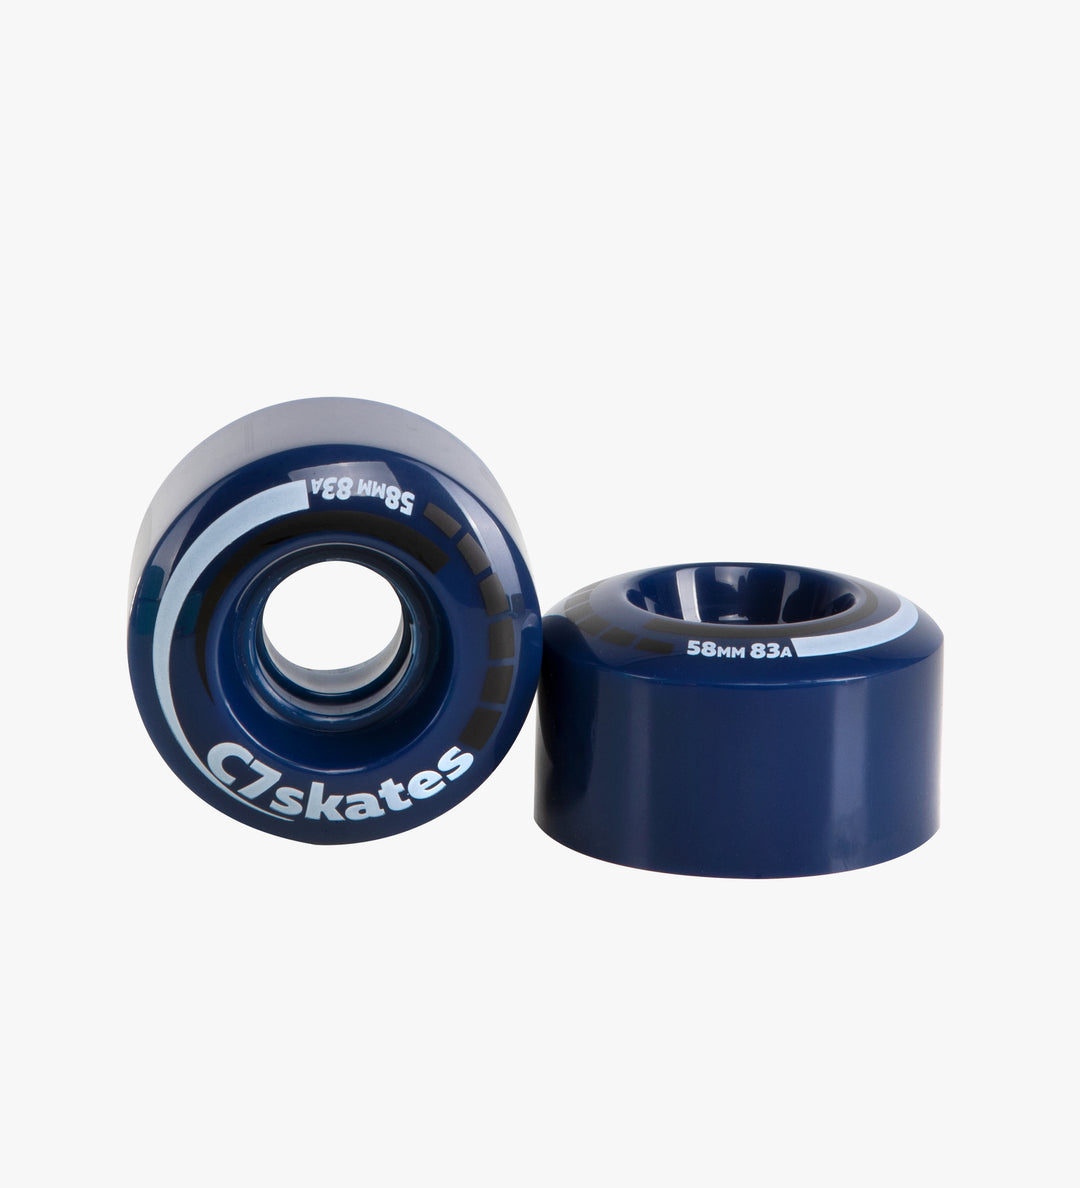 Roller Skate Wheels, Stoppers, Bearings Combo - Blossom Blue